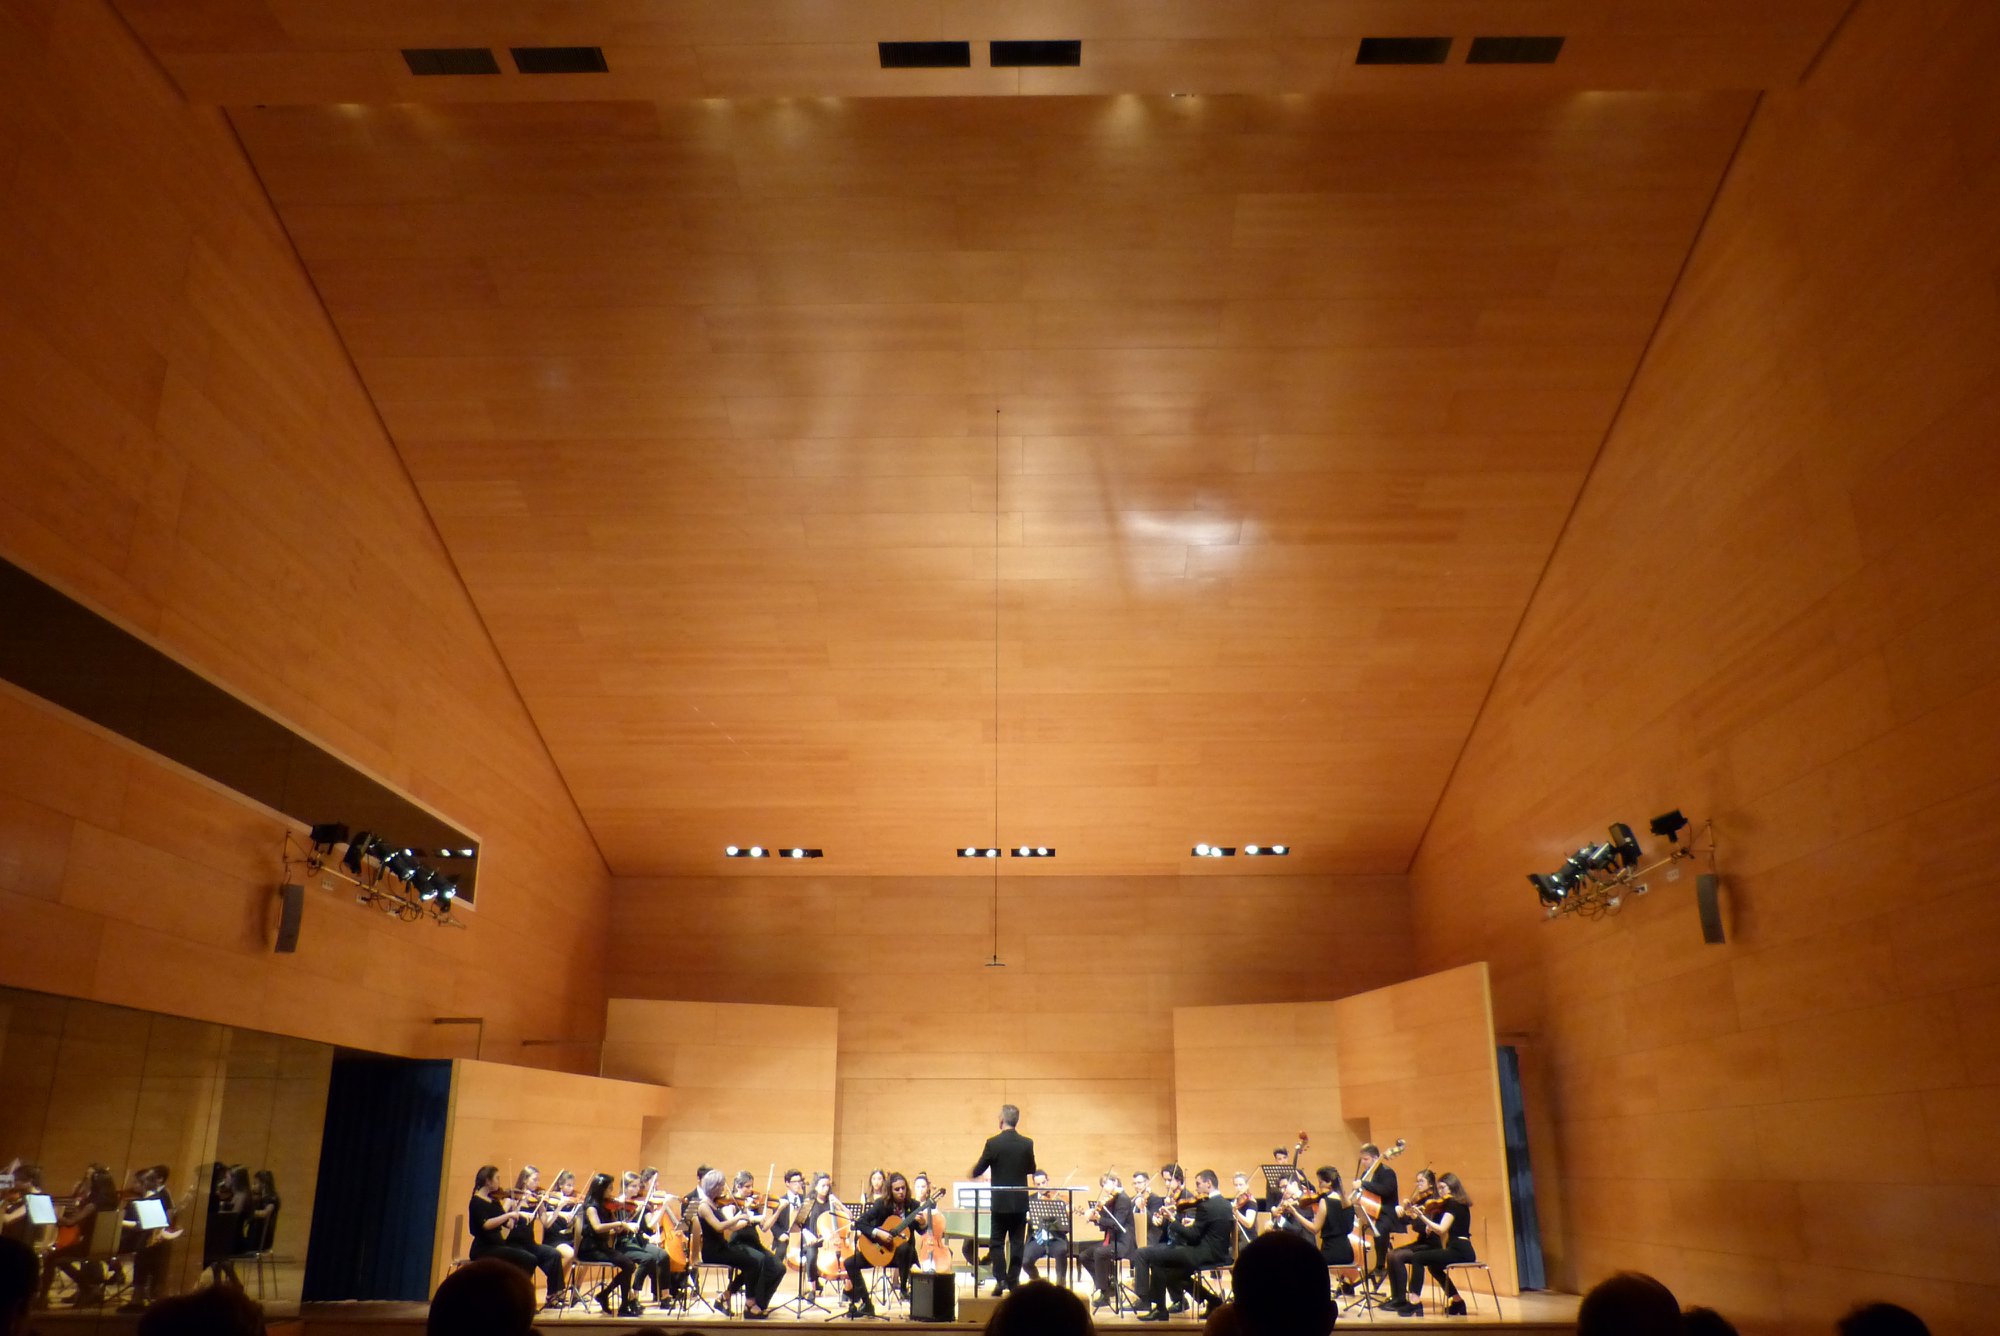 Magnífic concert de l'Orquestra Händel a l'Auditori Josep Carreras